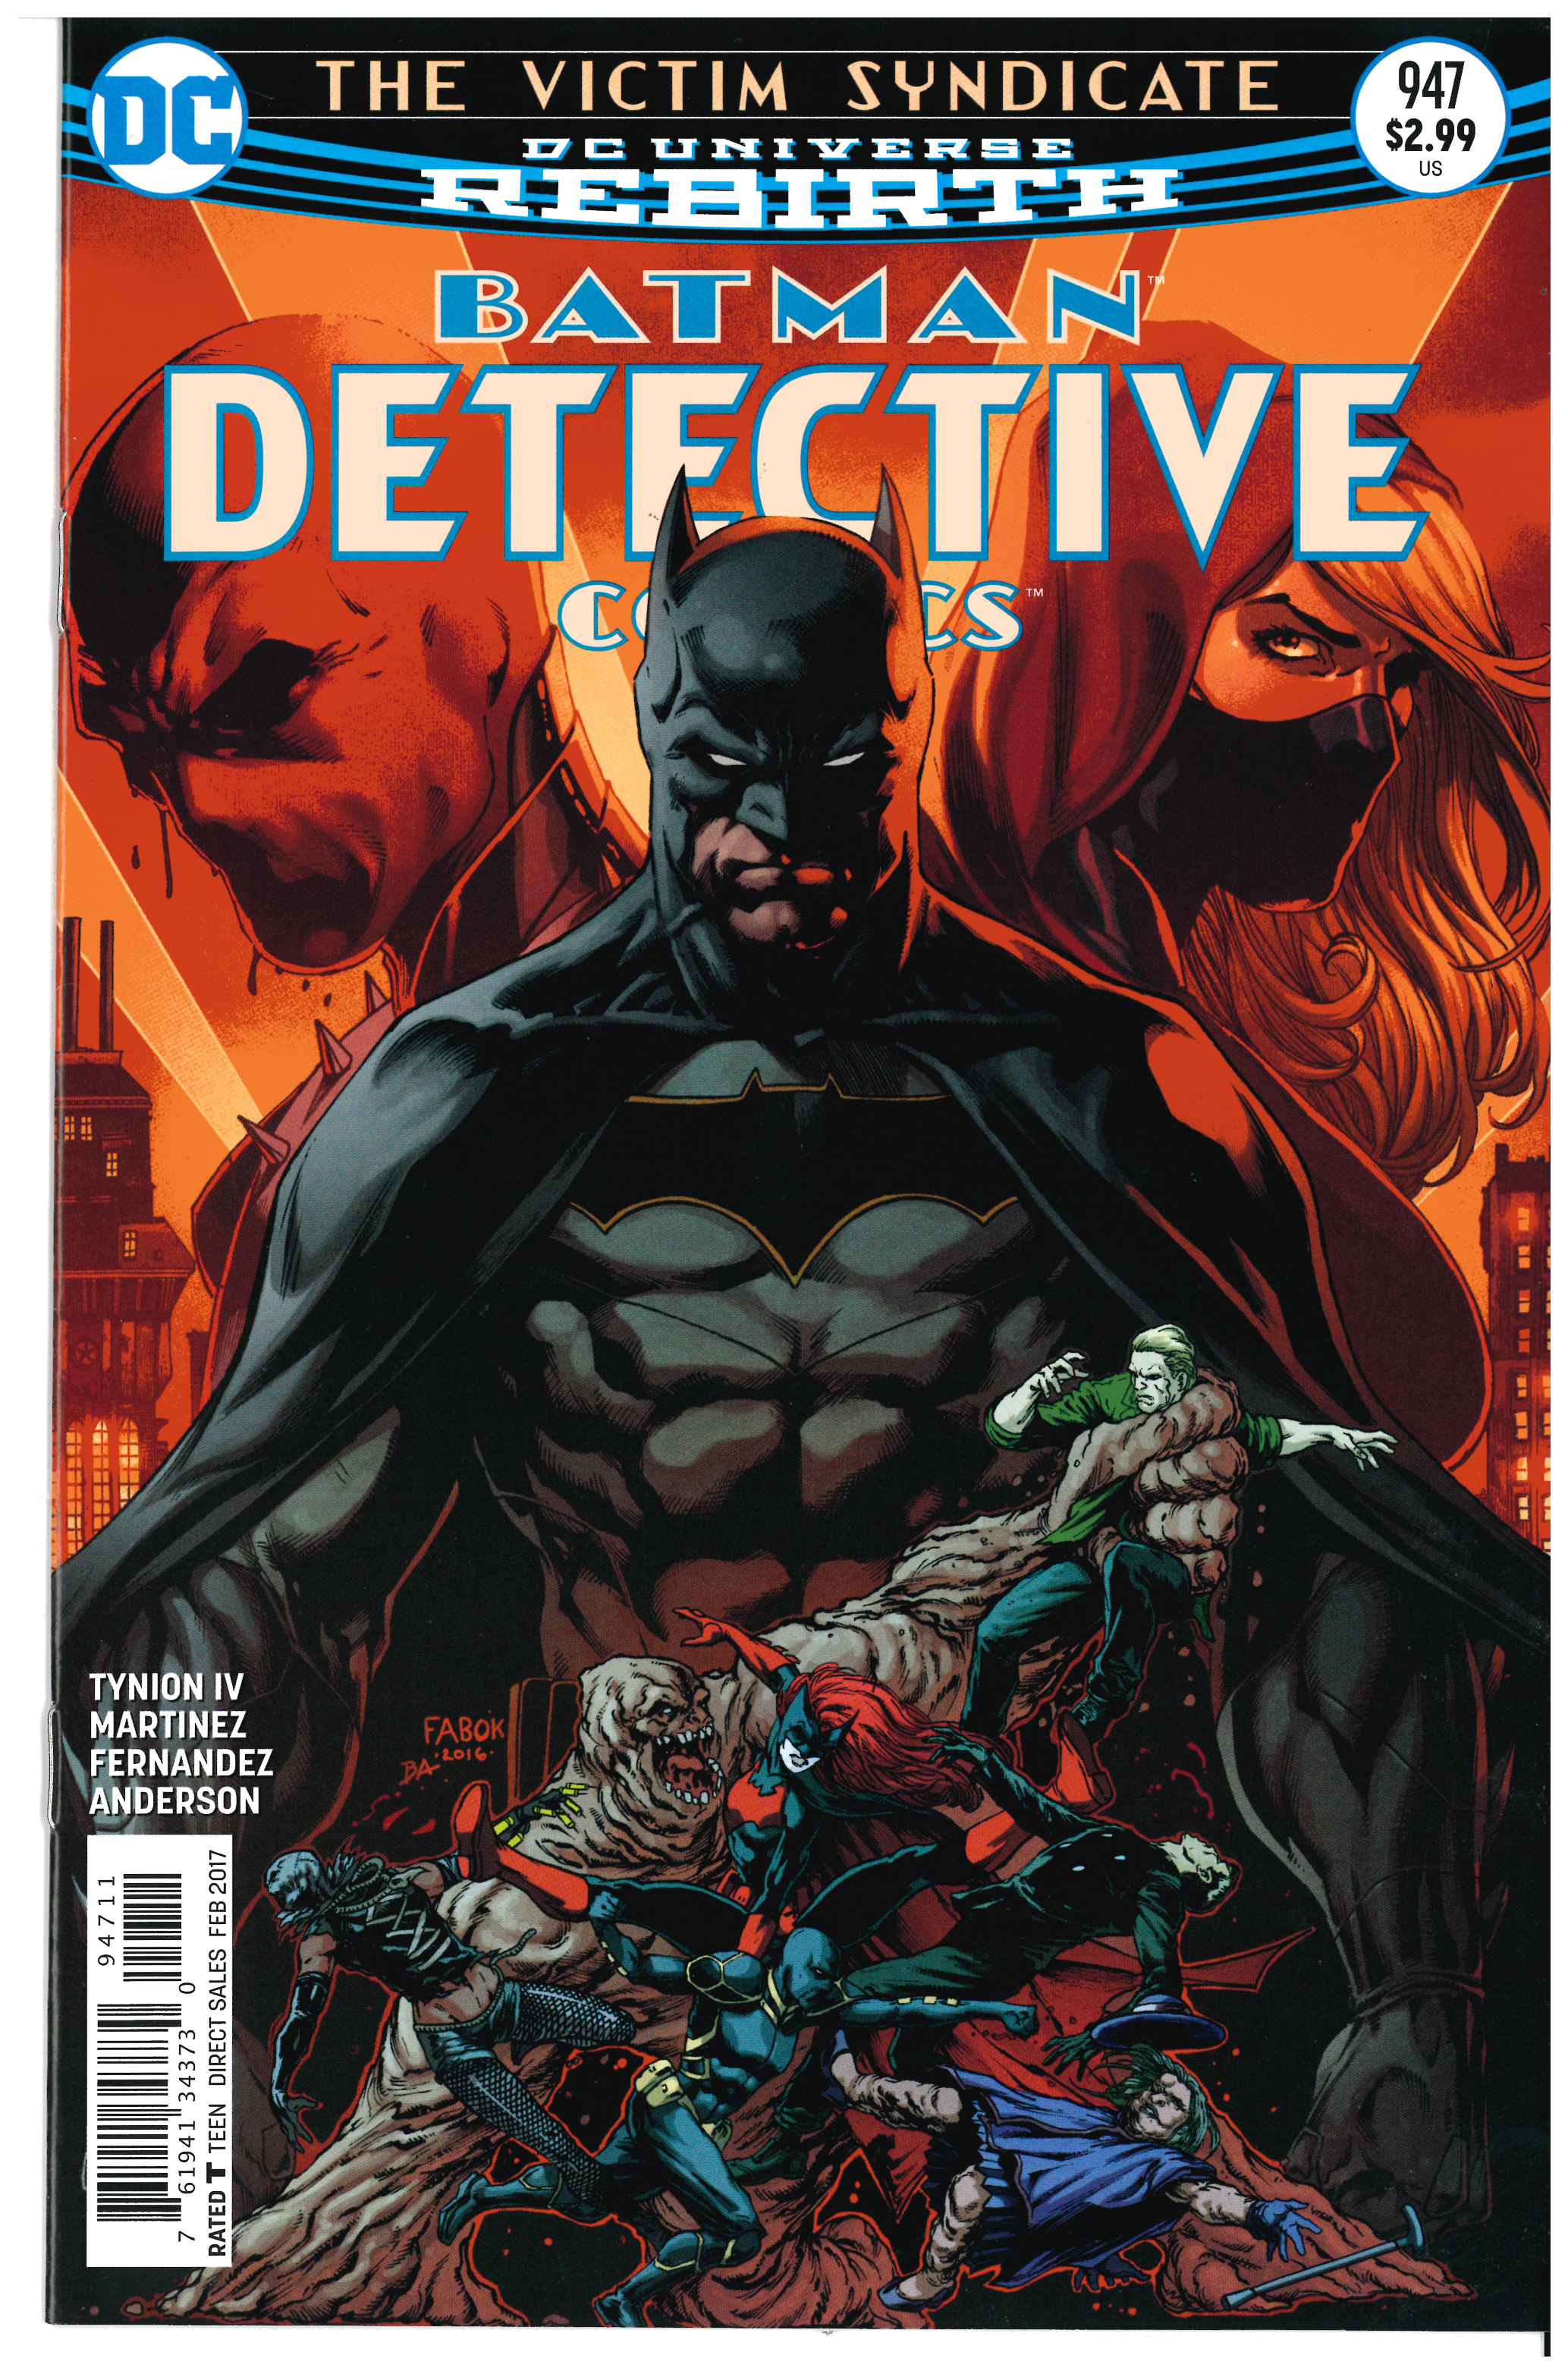 Detective Comics #947